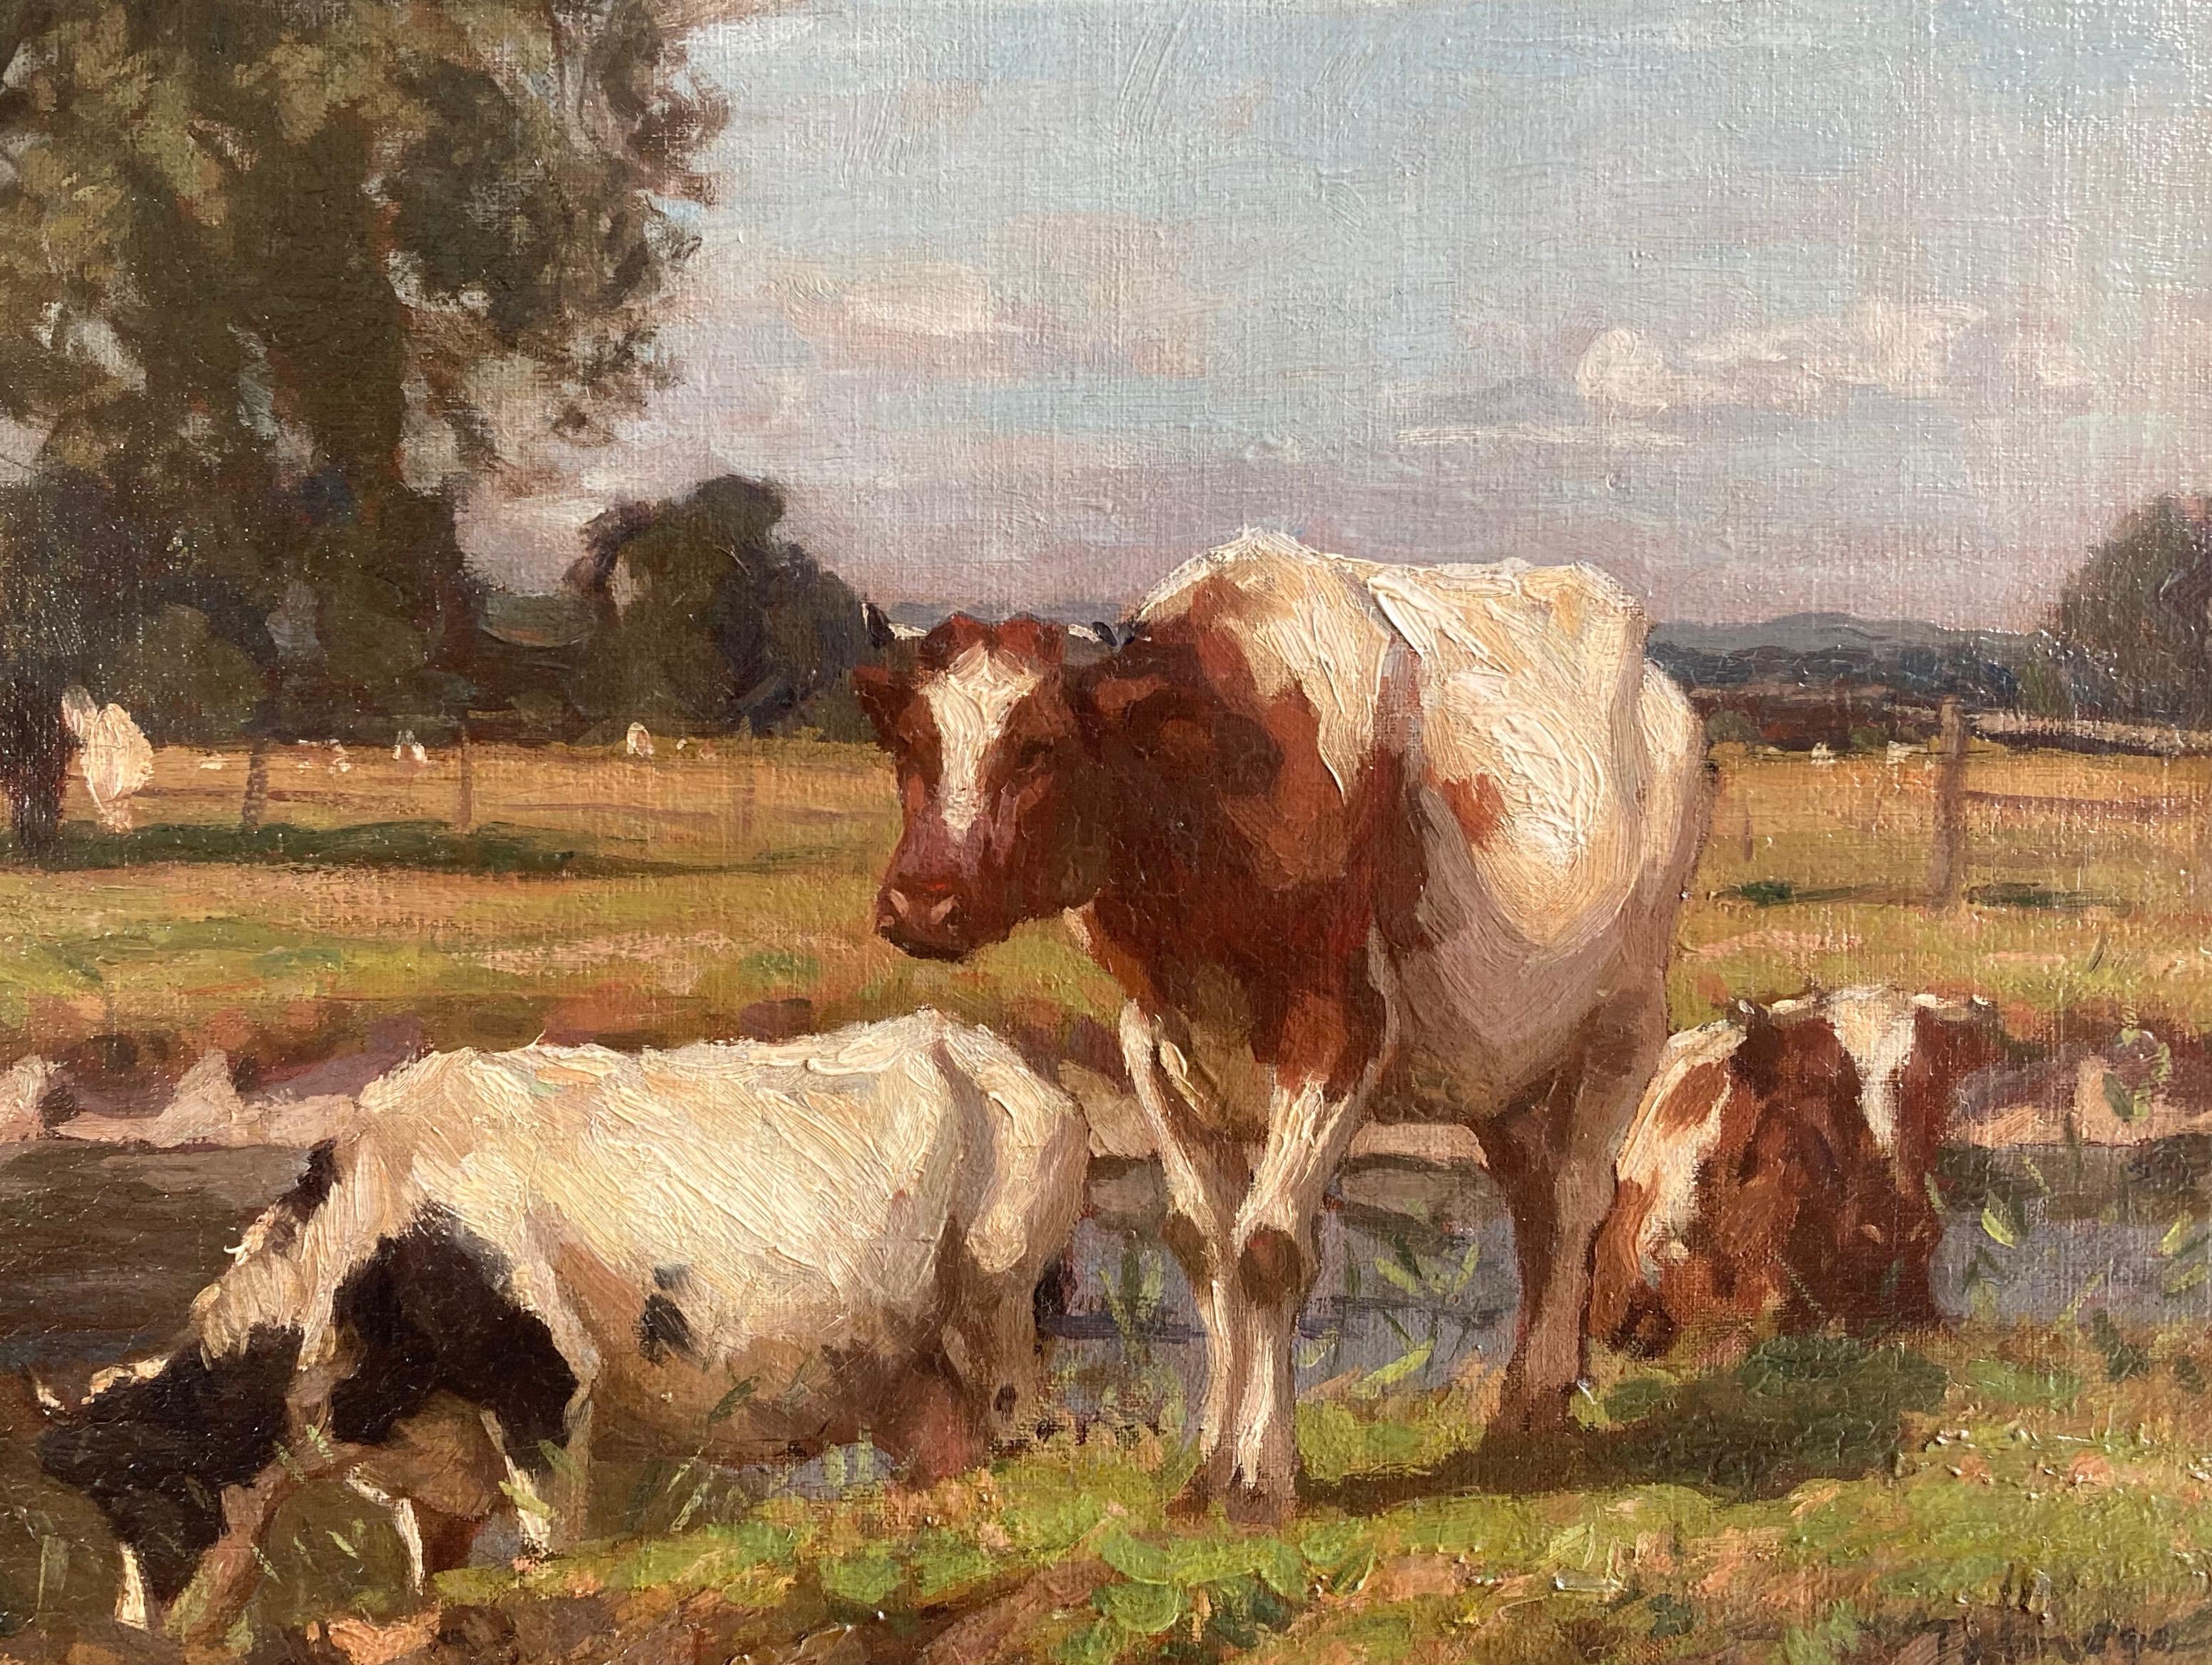 Algernon Talmage, Impressionist scene, cattle grazing in a river landscape 1